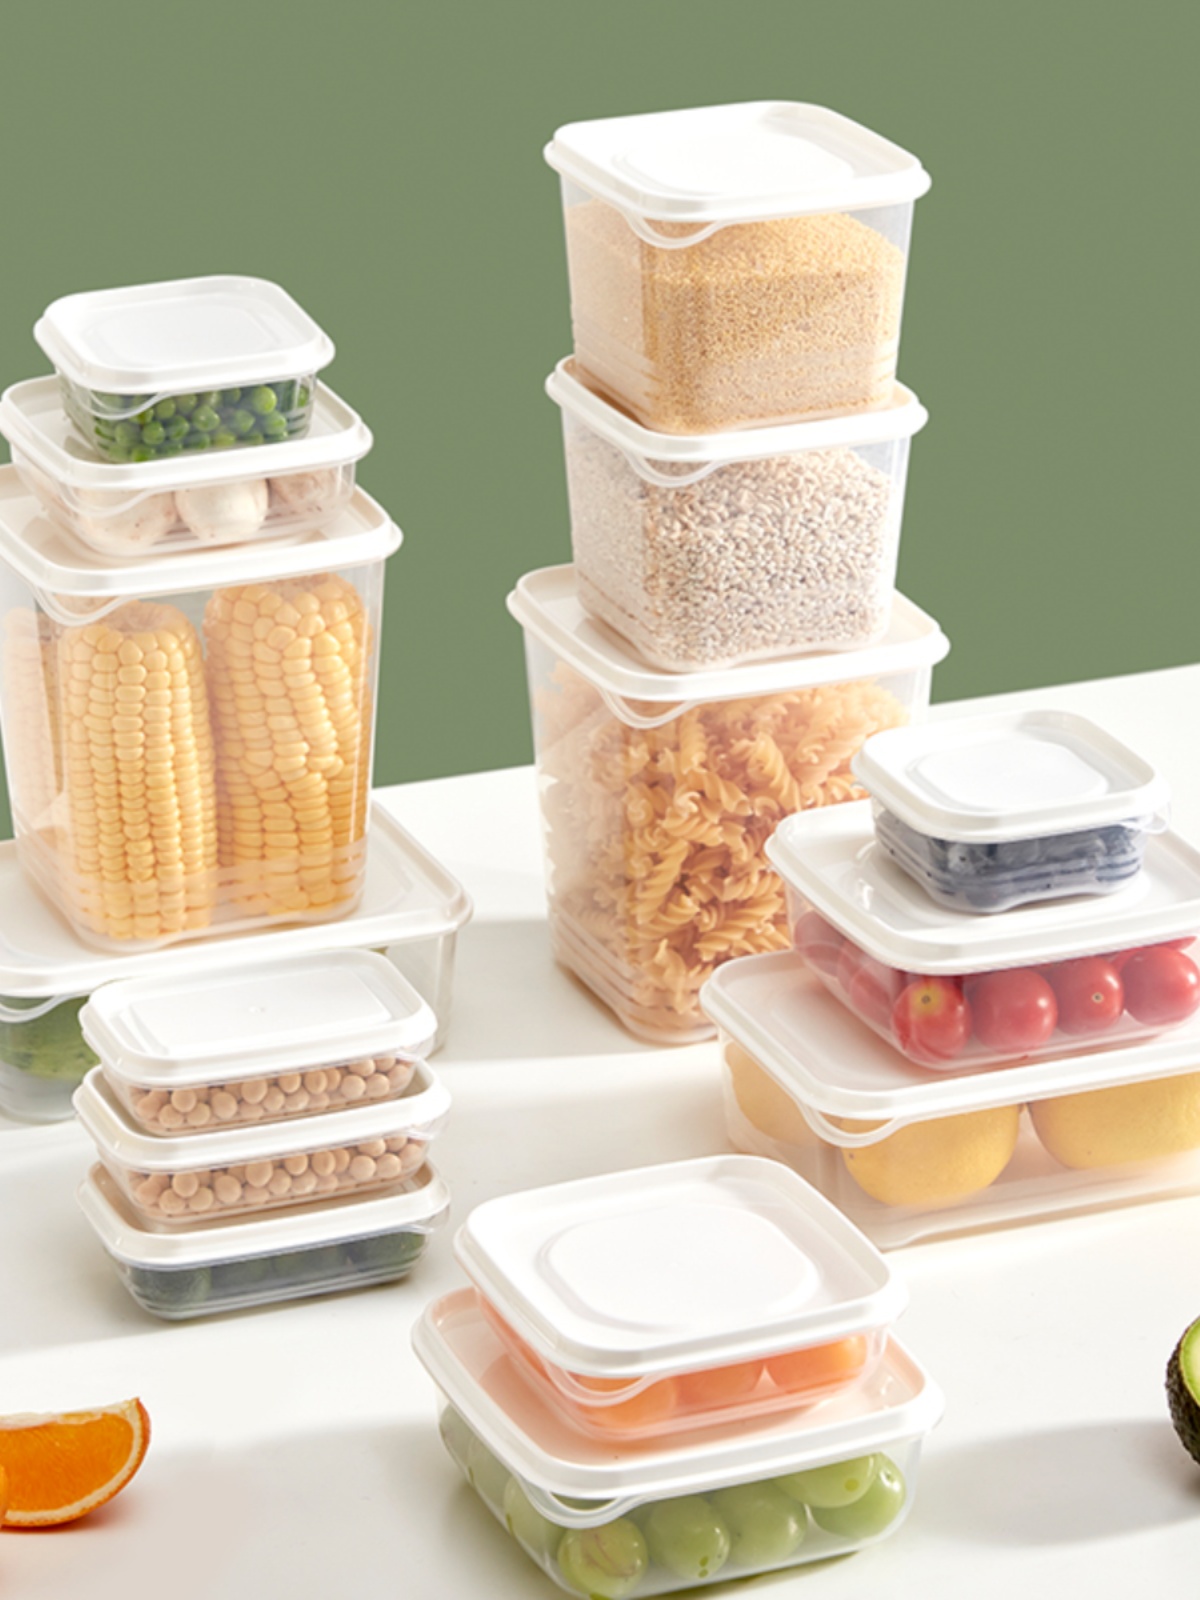 網易嚴選保鮮盒 食品級 冰箱收納盒 冷凍蔬菜水果密封盒 塑料便當盒 超值15件套裝 (6.2折)